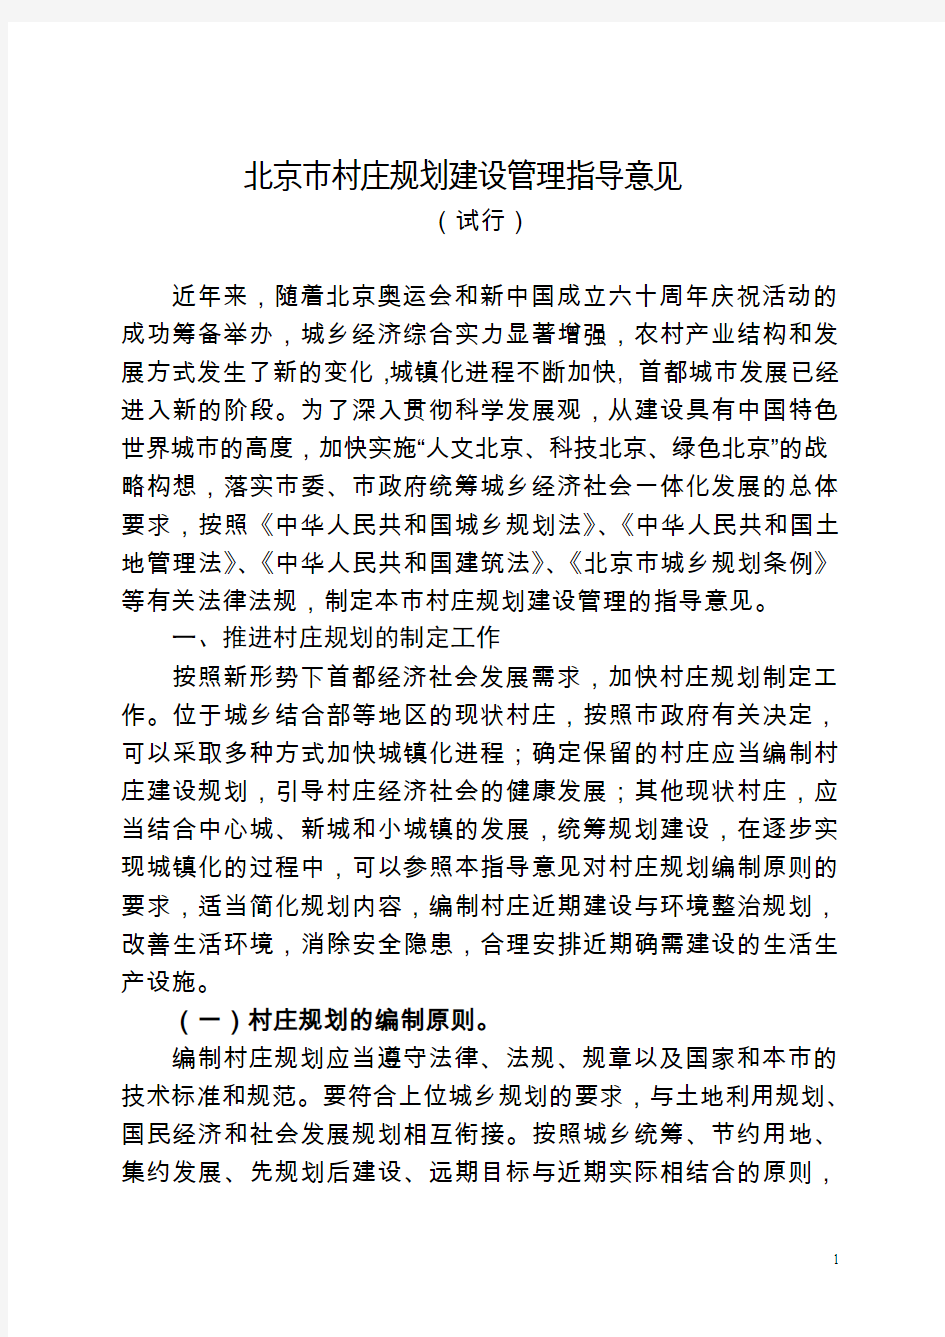 北京村庄规划建设管理指导意见